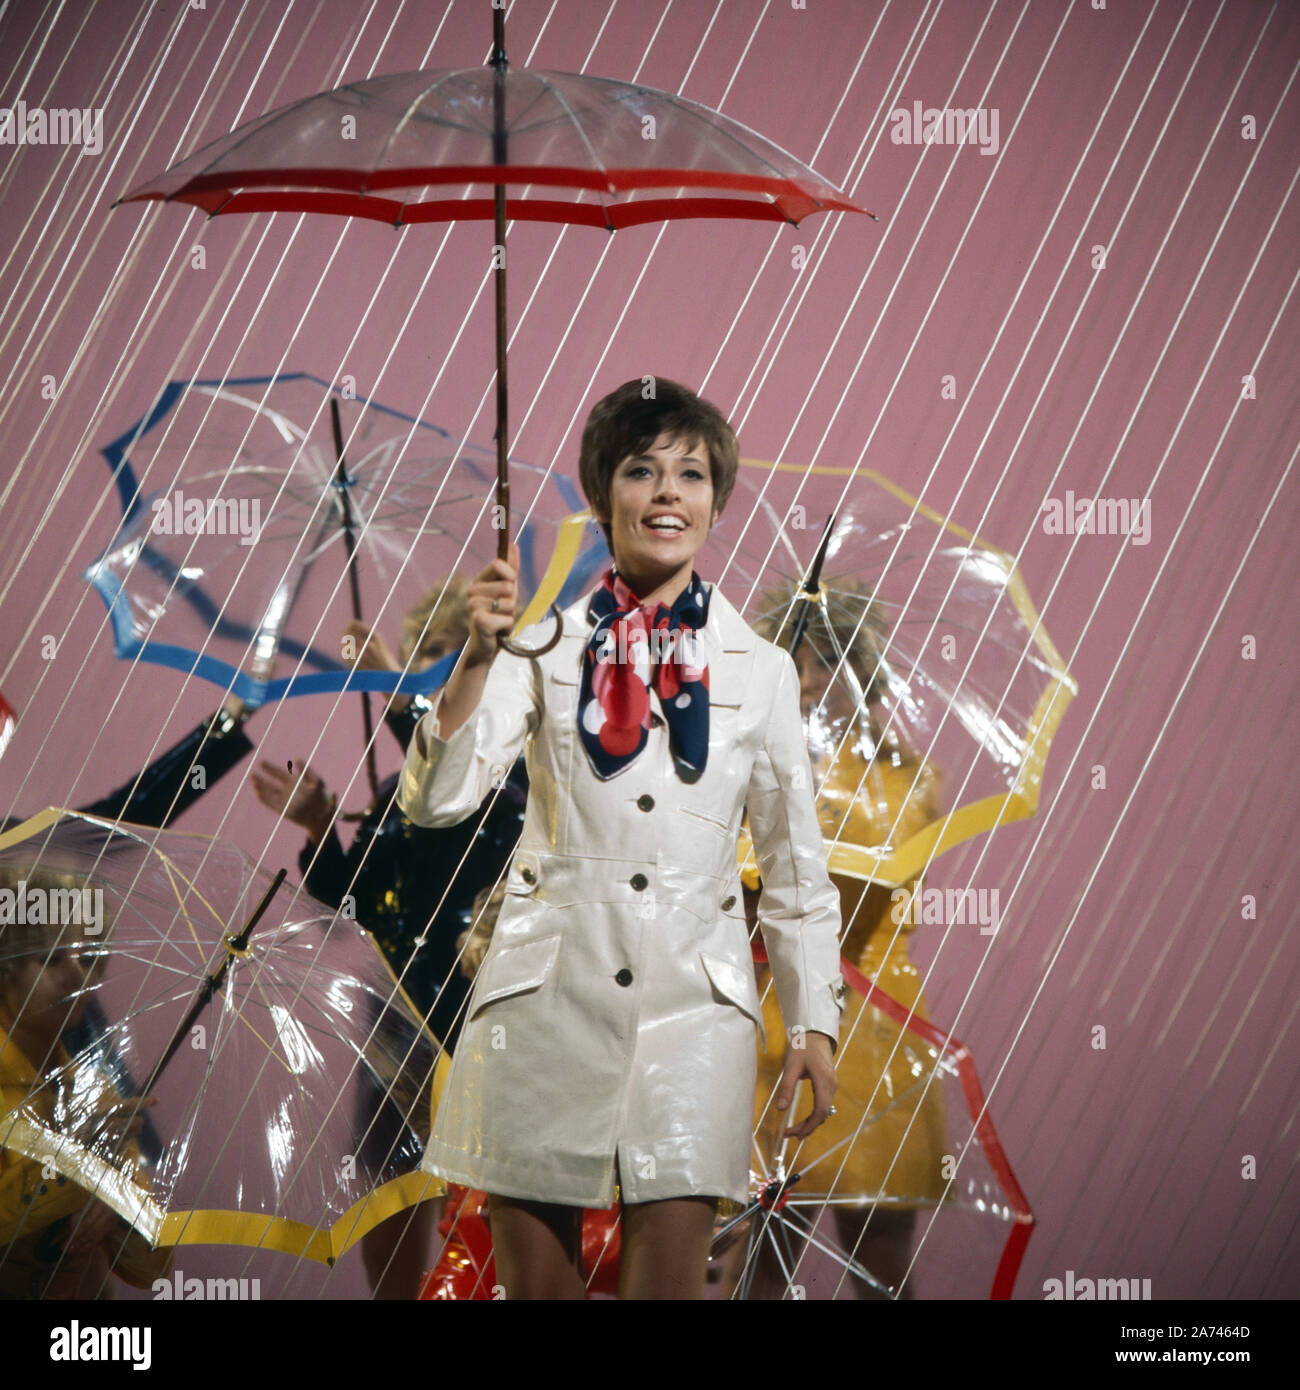 Sommernotenschau, Unterhaltungsshow, Deutschland 1970, Mitwirkende: Tonia Mertens mit ihrem Song 'Mein rosaroter Regenschirm'. Stock Photo